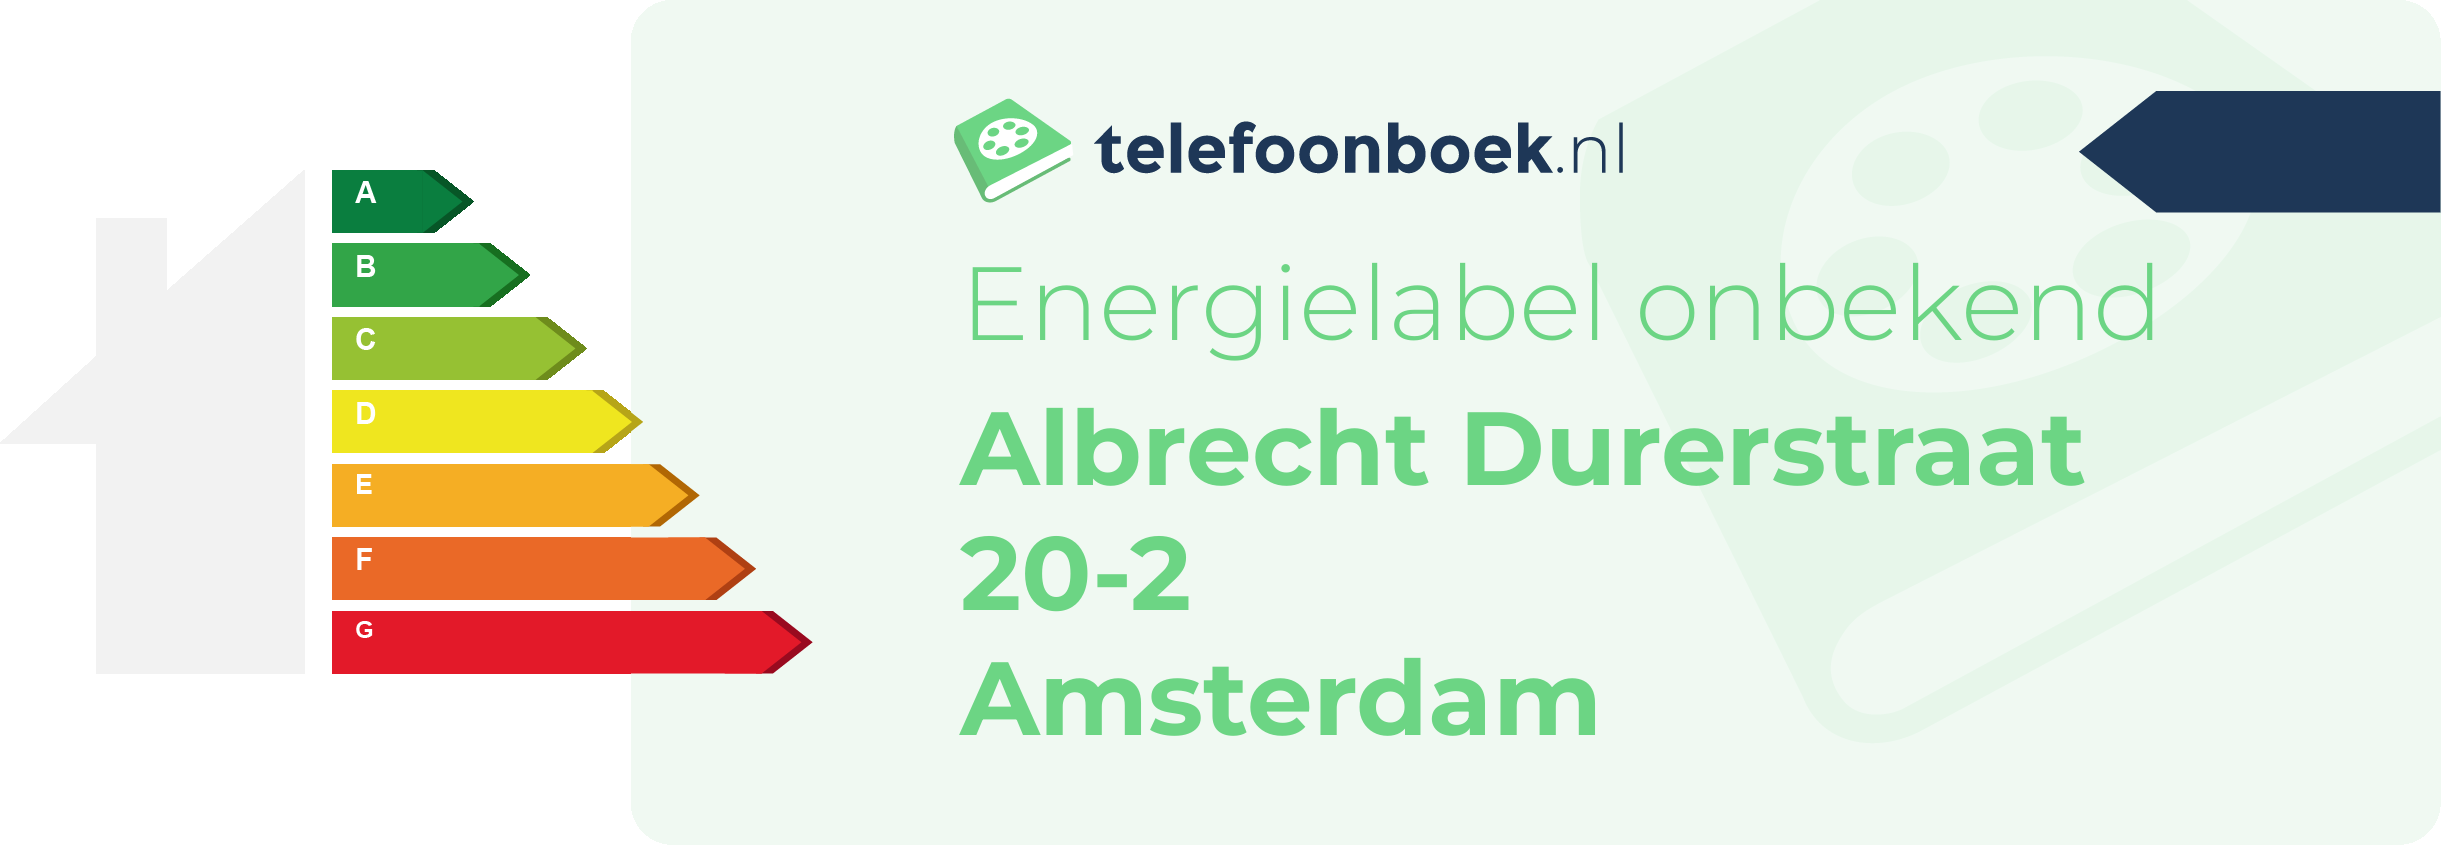 Energielabel Albrecht Durerstraat 20-2 Amsterdam